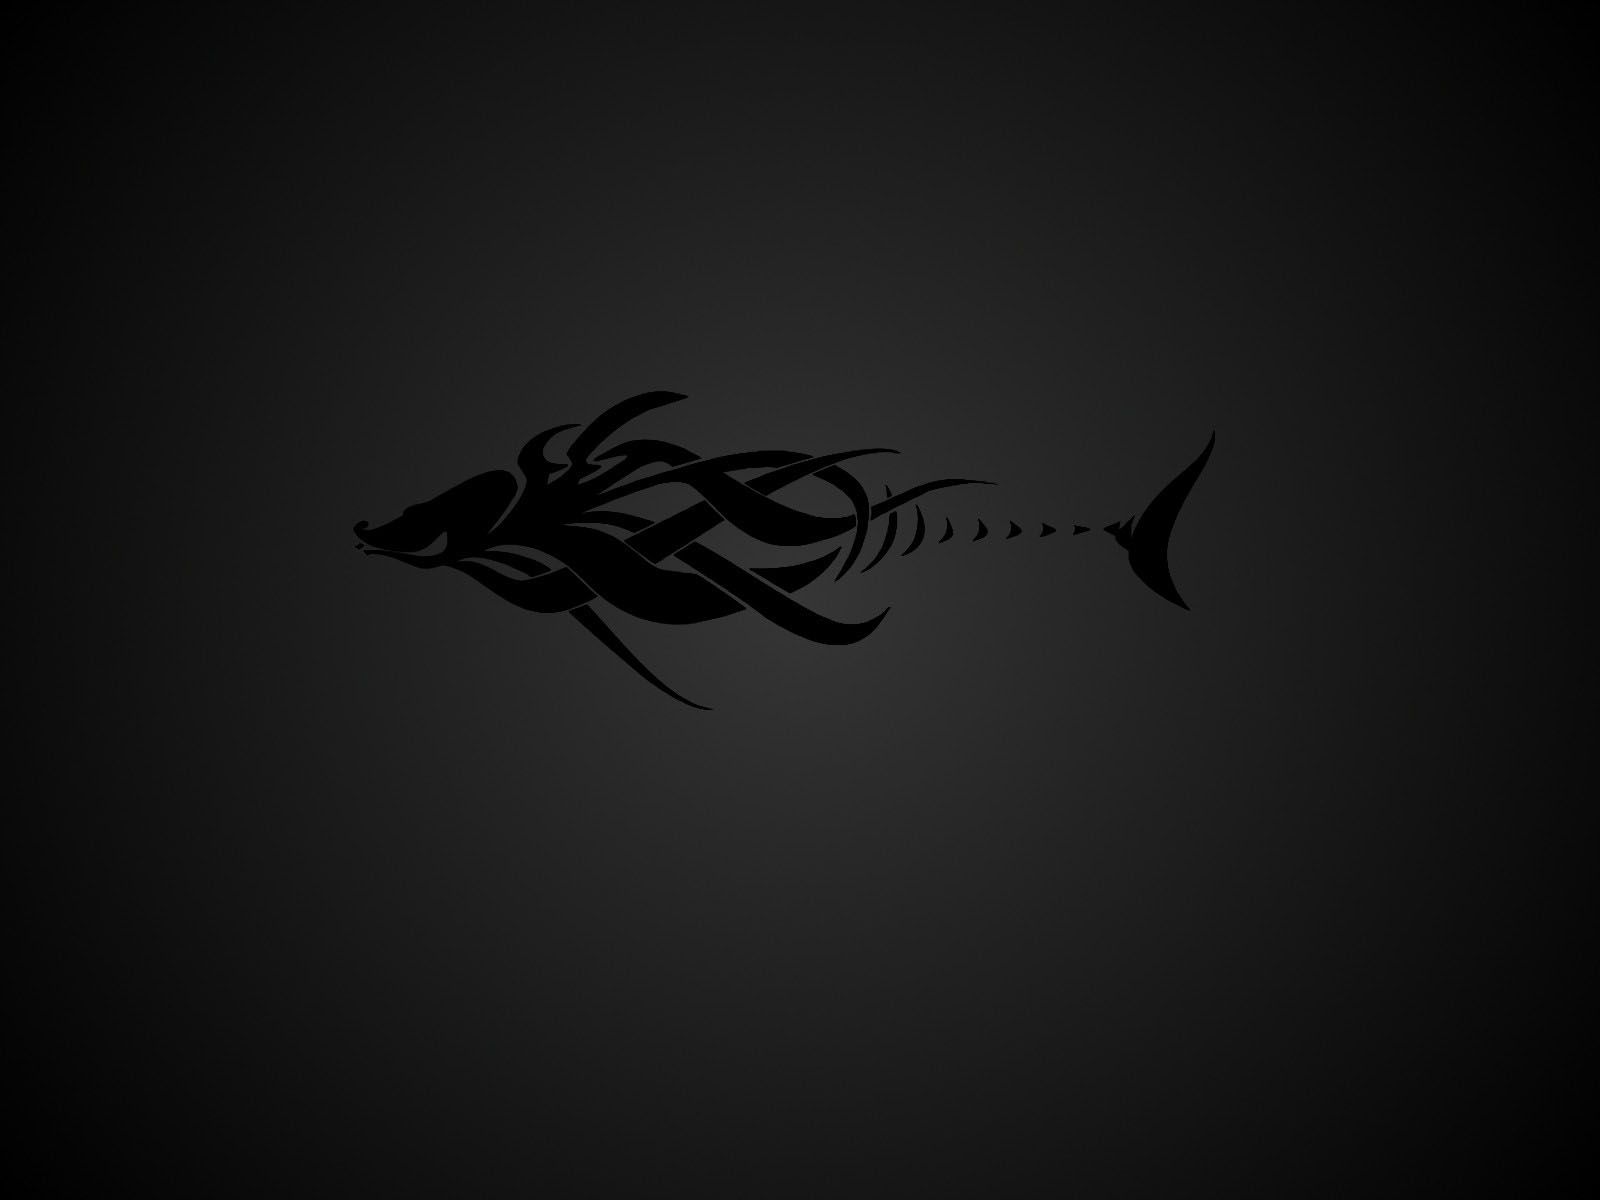 Black Tribal Fish Tattoo Design - 1600x1200 - Wallpaper